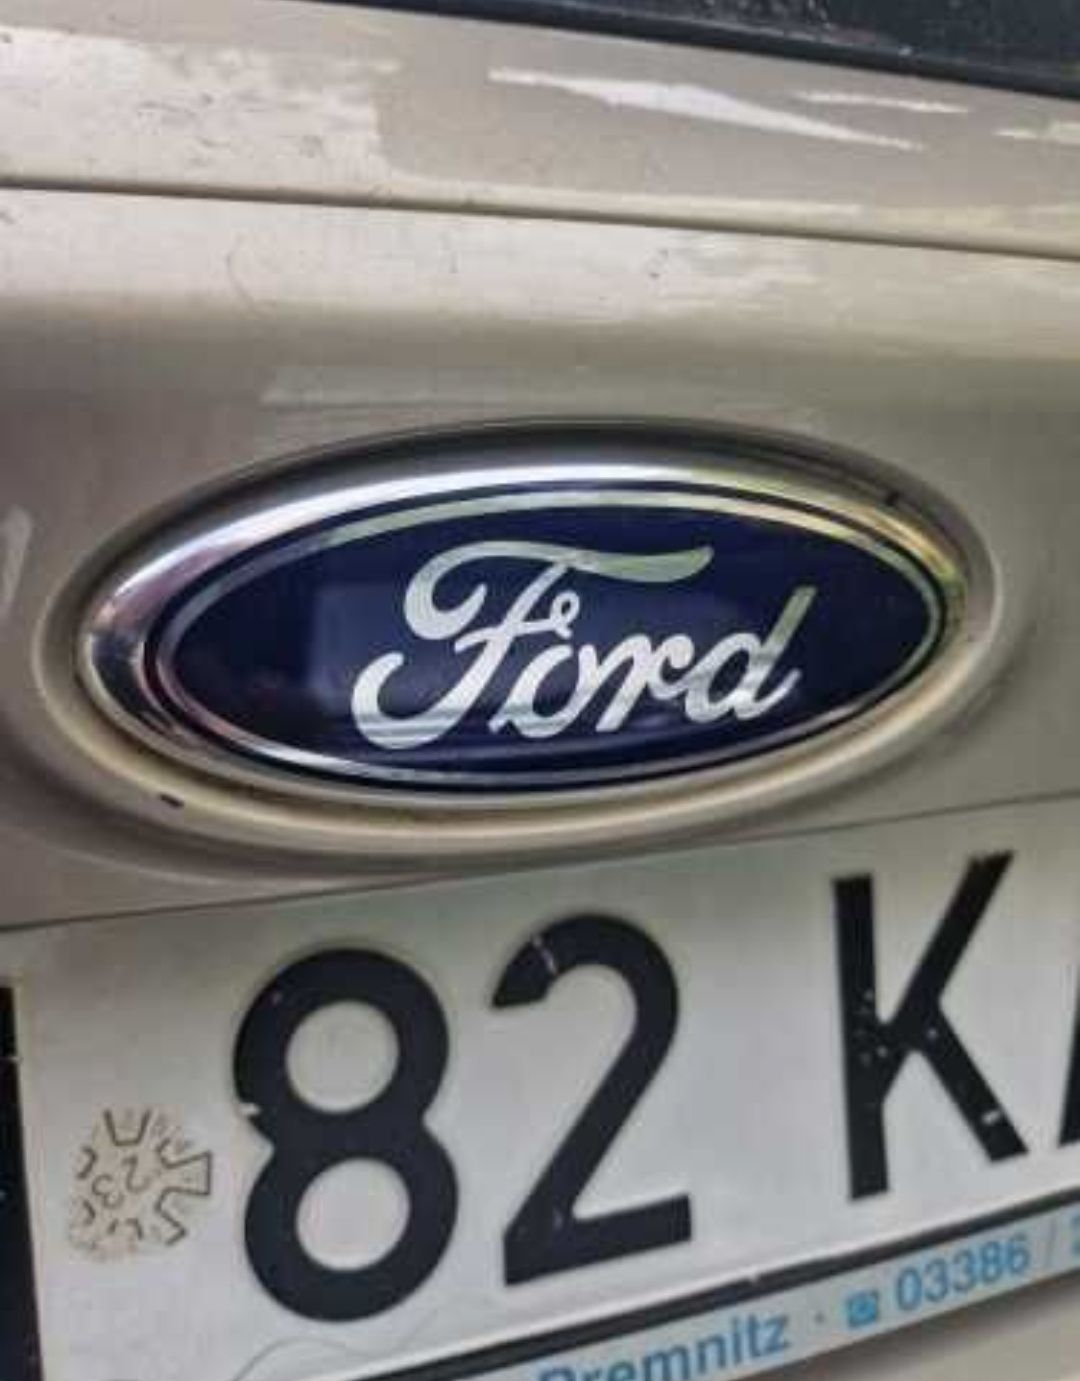 Sigla / Emblema metalica Ford 14,5 x 5,8 cm (focus, mondeo etc)